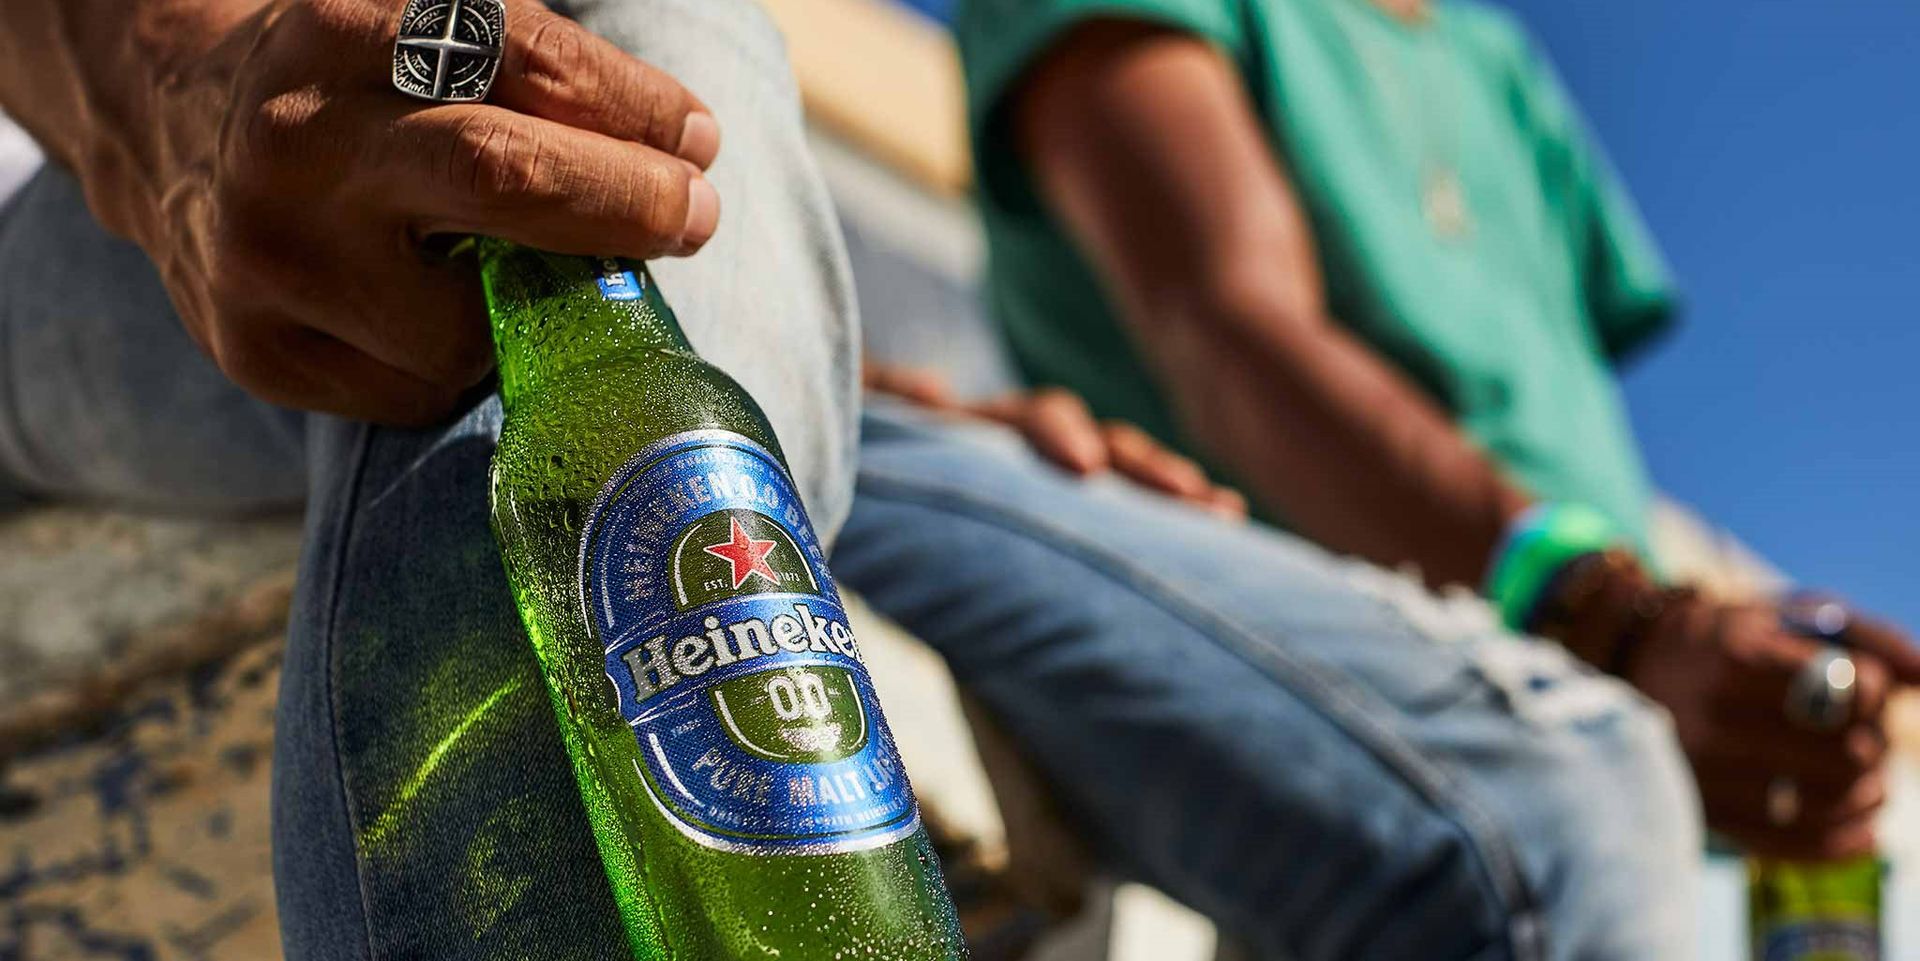 Zakenbanken hanteren te hoge koersdoelen voor Heineken